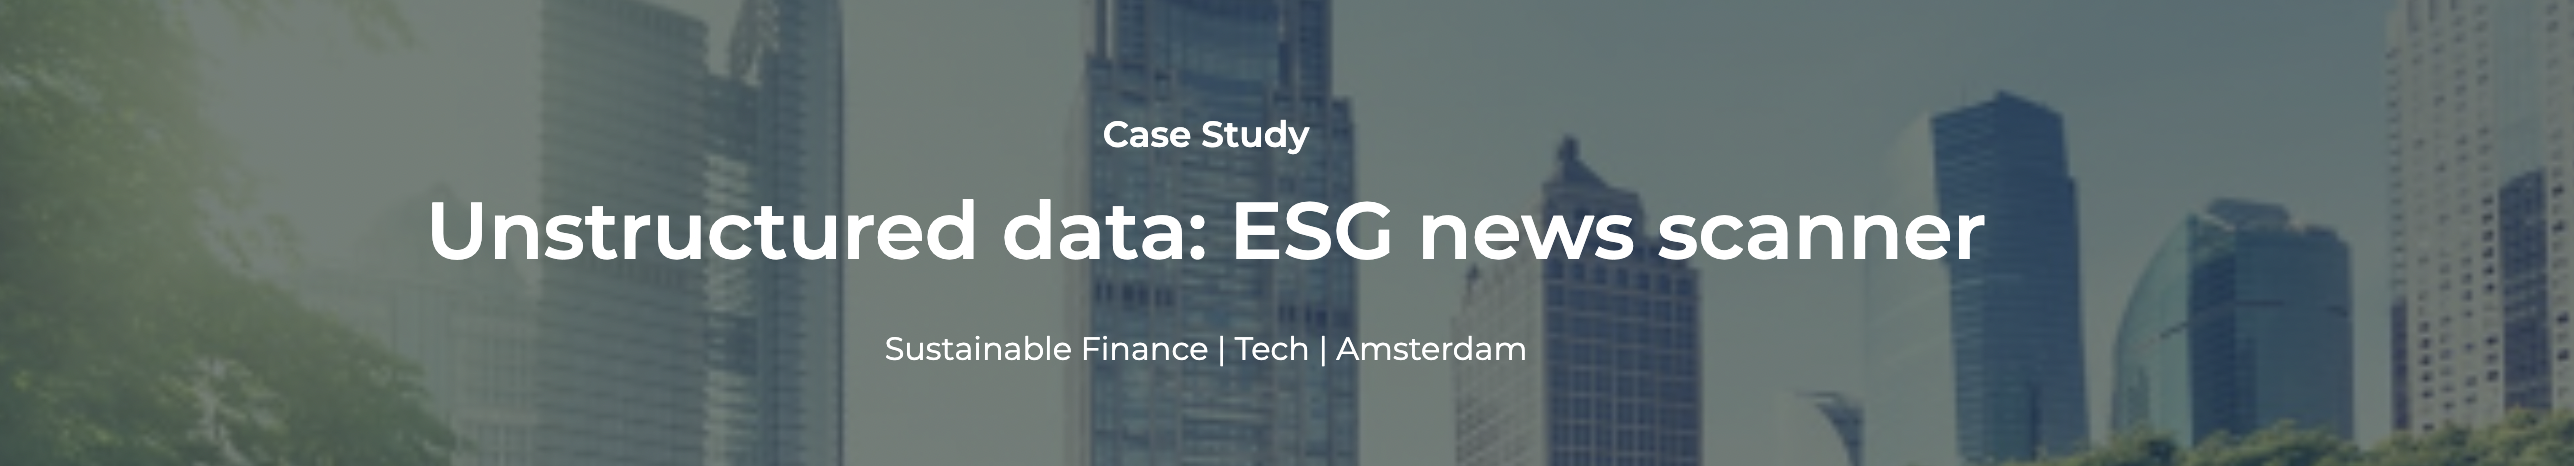 Digital Case Study: Unstructured Data - ESG News Scanner